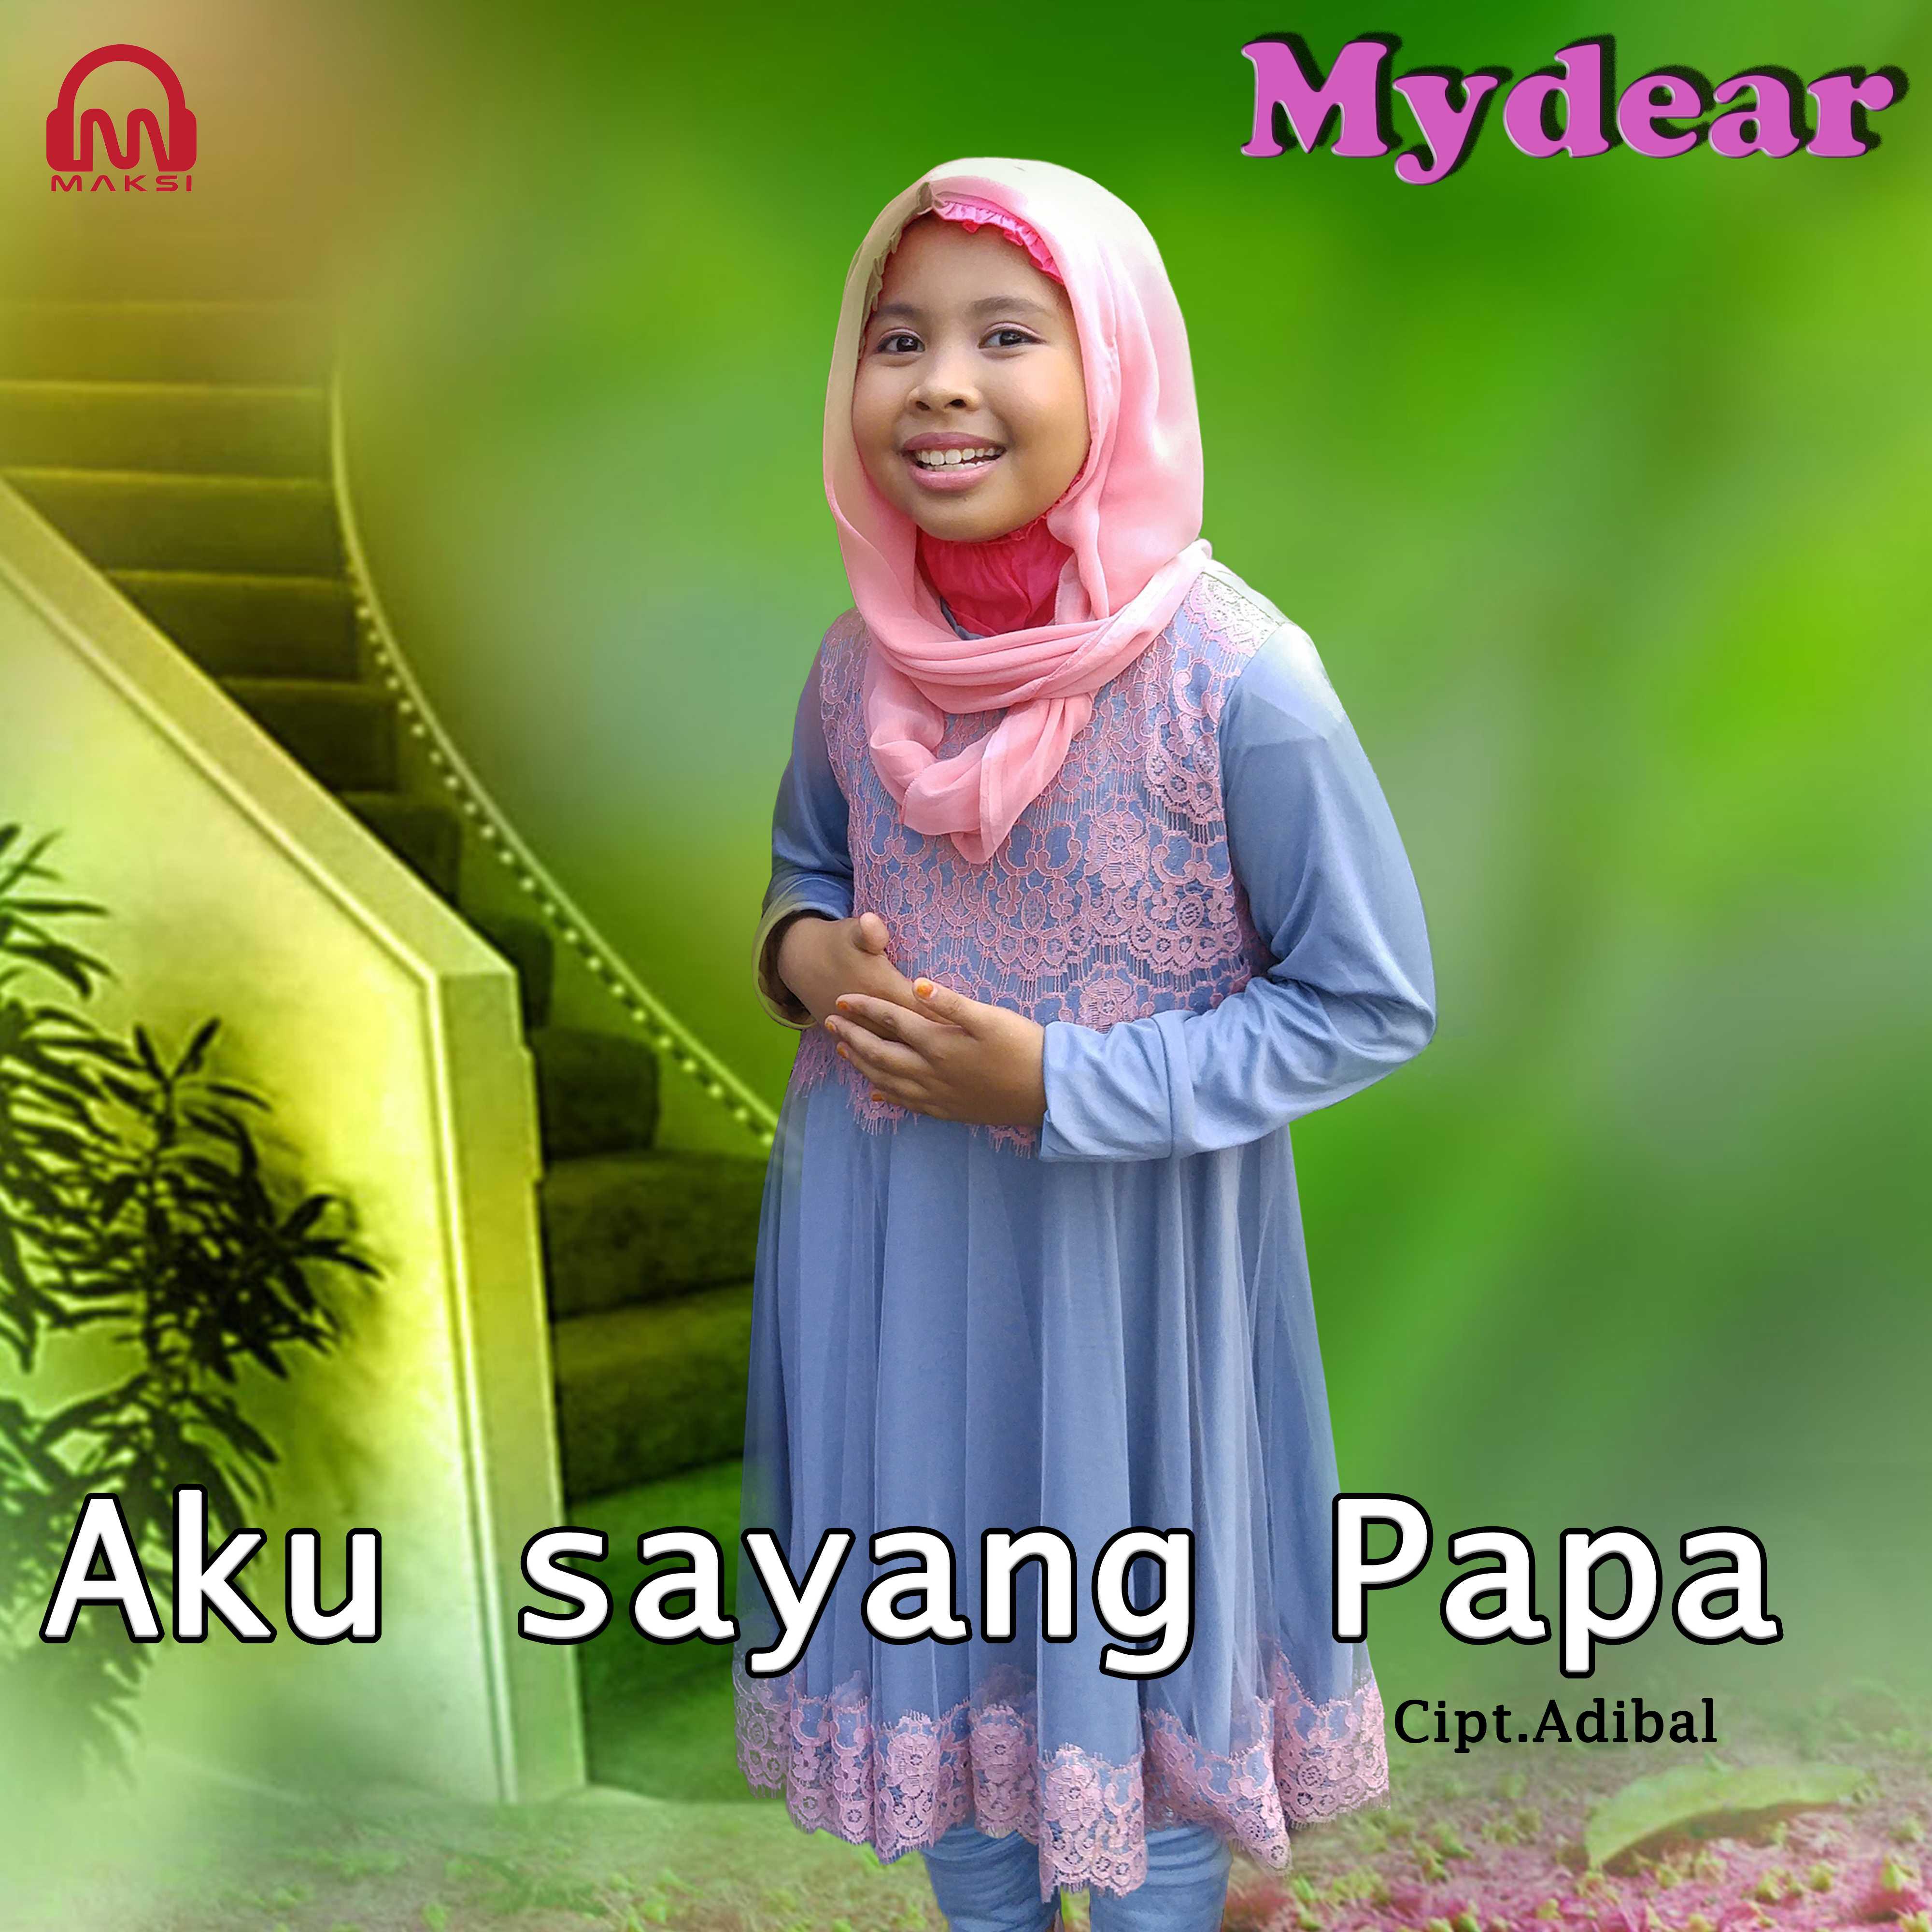 Mydear